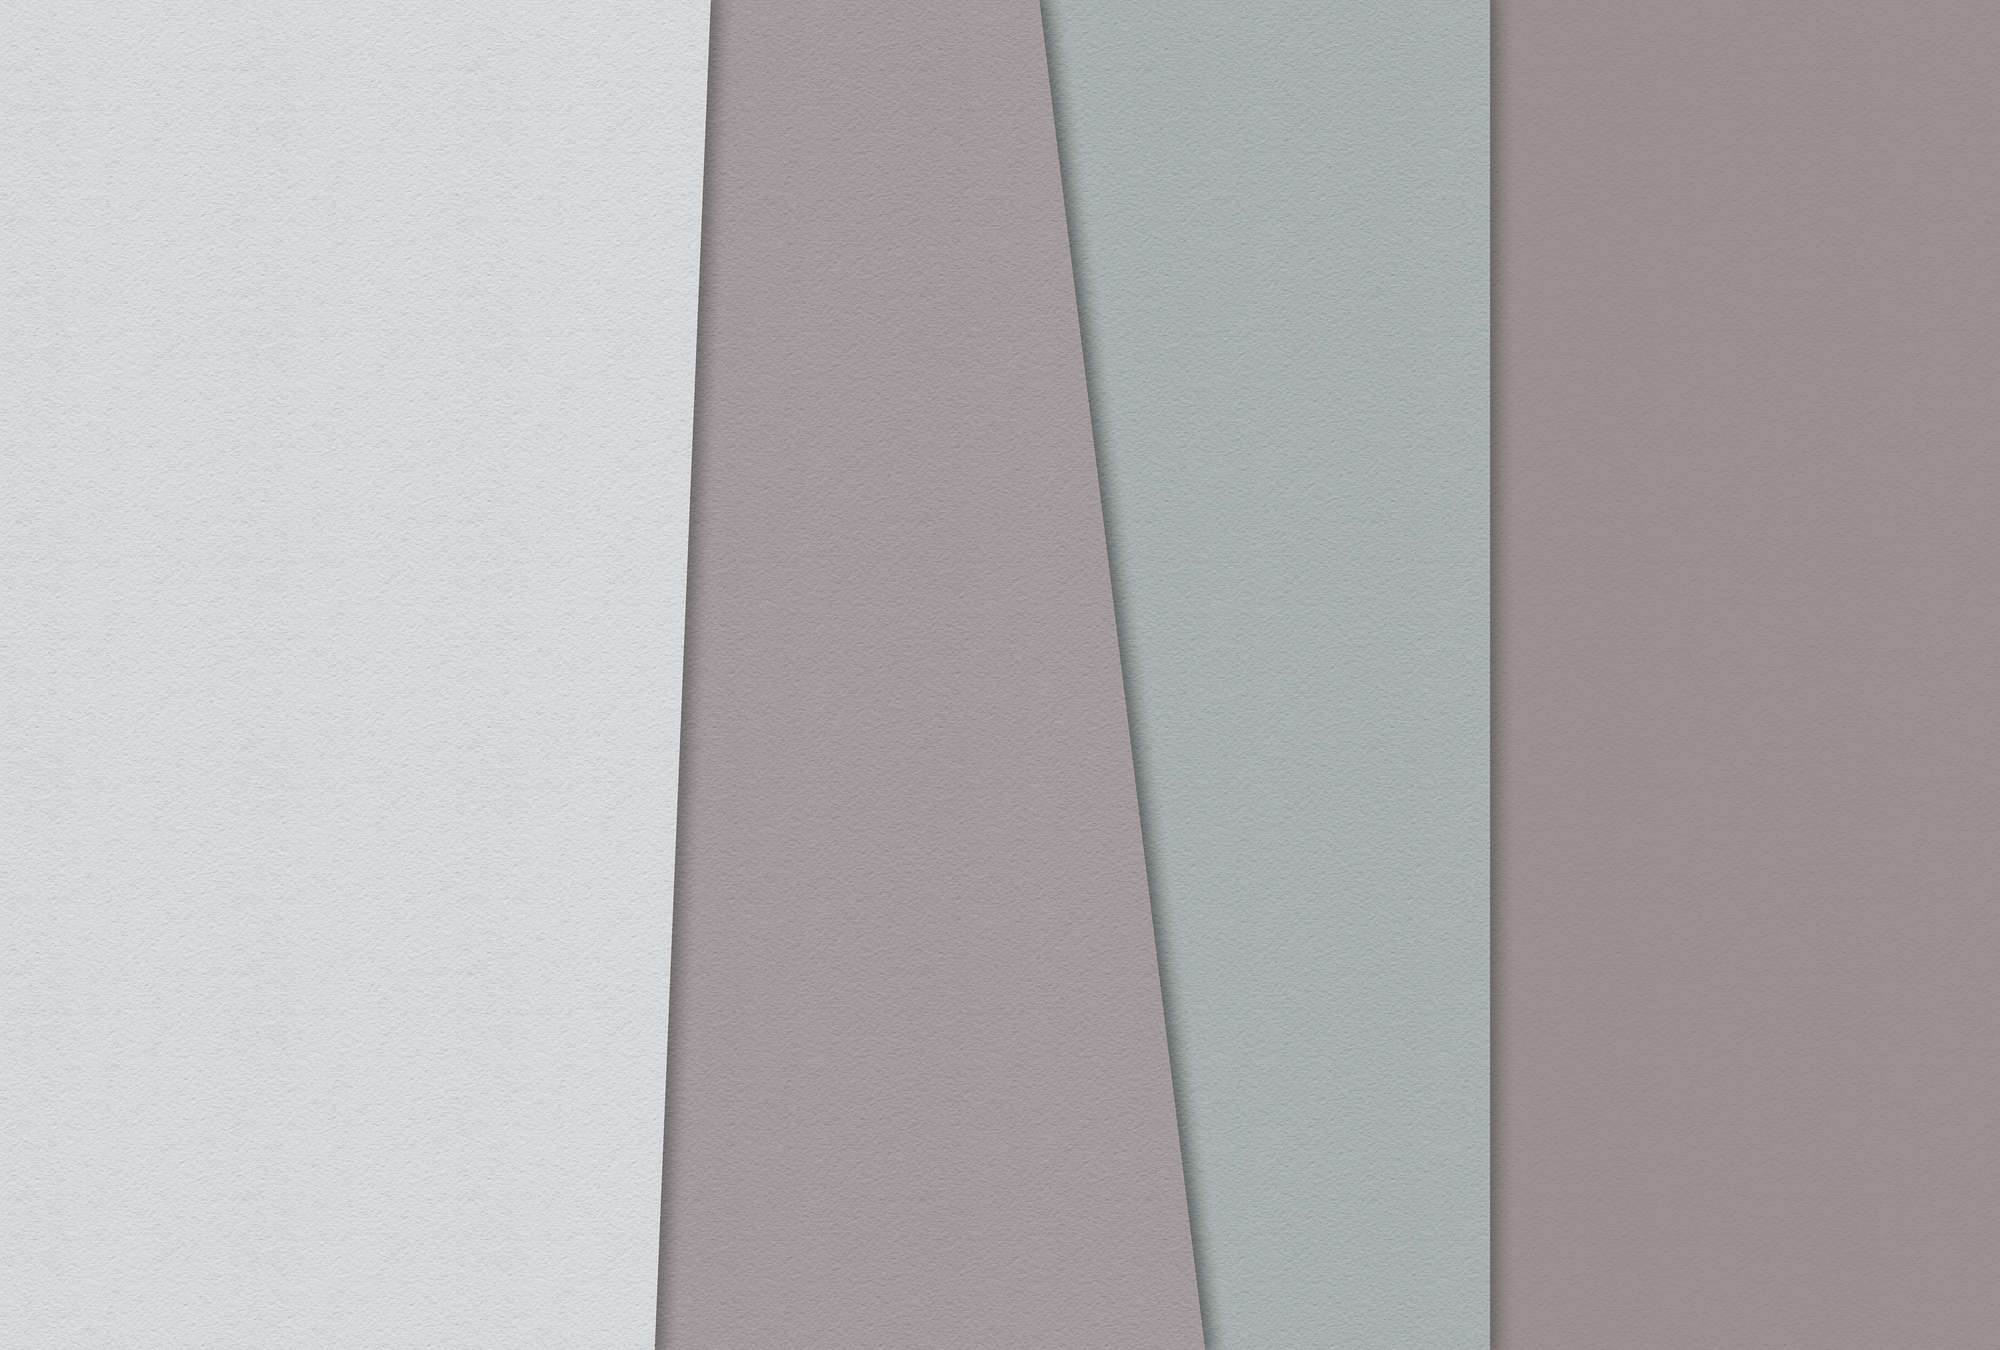             Layered paper 3 - Minimalist Wallpaper Colour Fields Handmade Paper Texture - Blue, Cream | Matt Smooth Non-woven
        